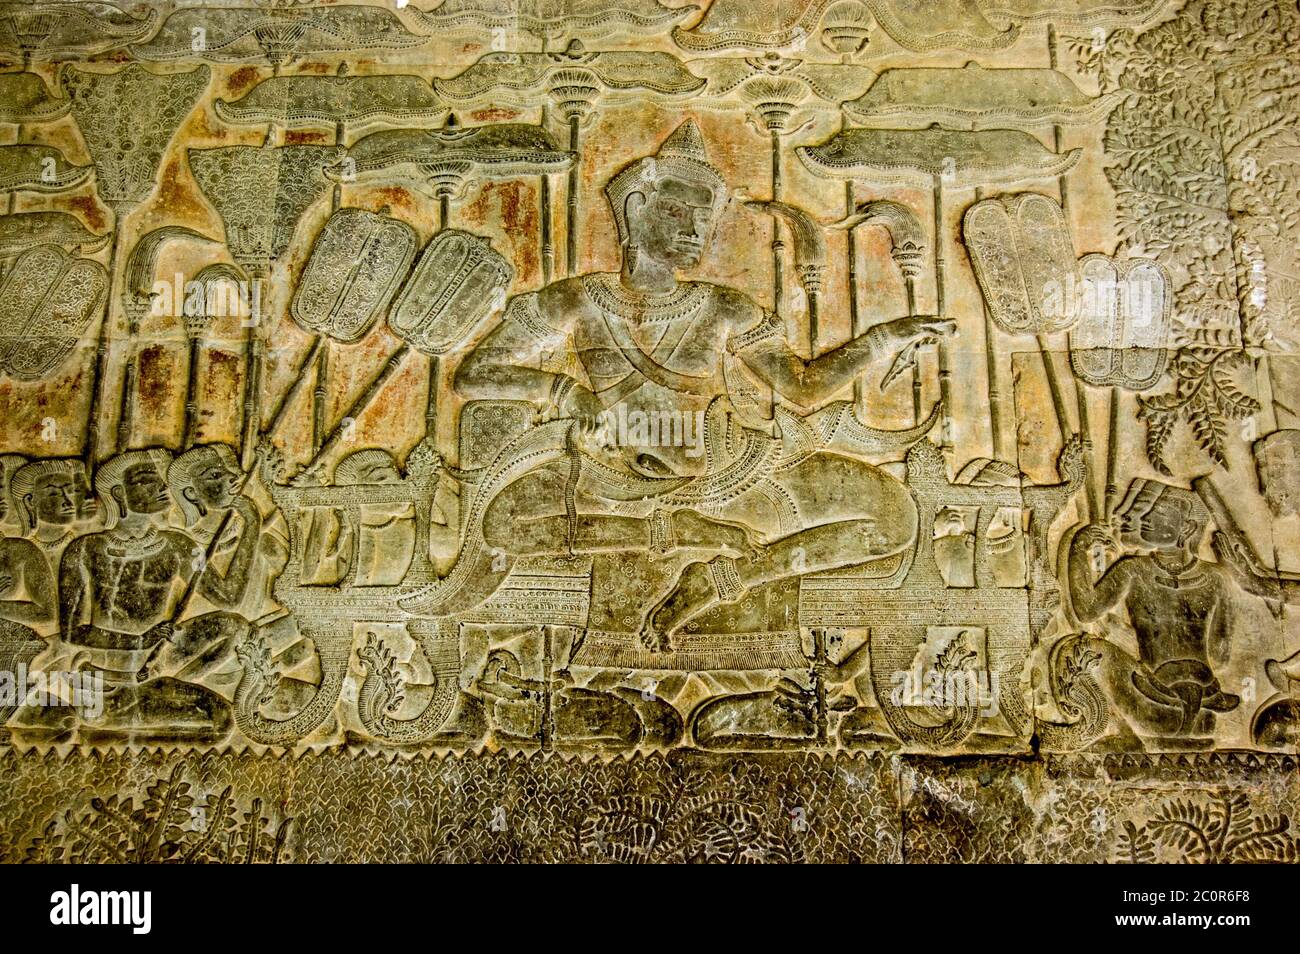 Bas Relief Skulptur von König Suryavarman II umgeben von Themen mit Sonnenschirmen und Ventilatoren. Angkor Wat Tempel, Siem Reap, Kambodscha. Stockfoto